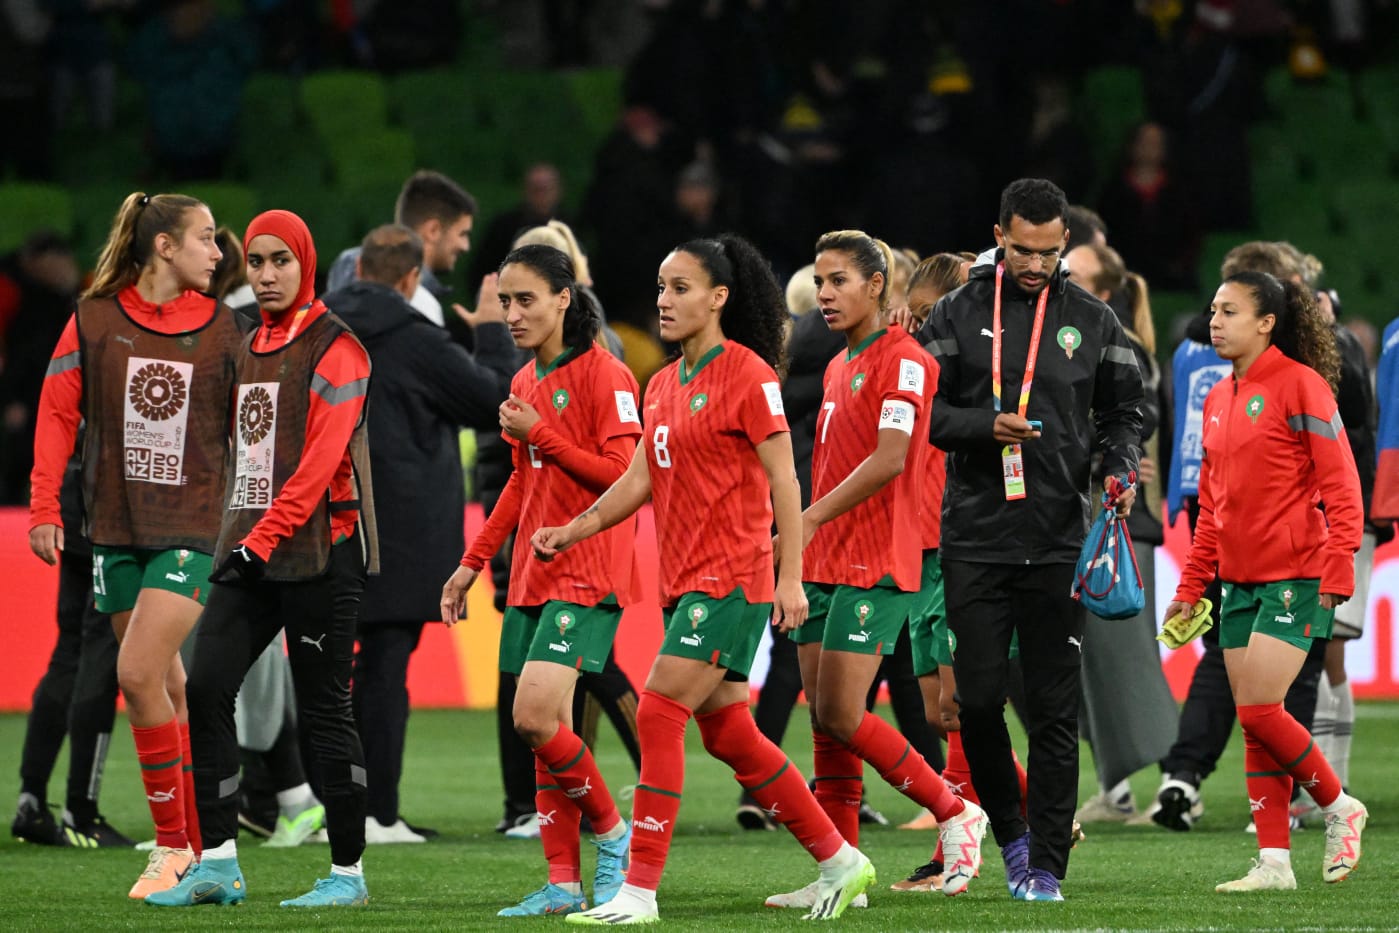 Marrocos é o primeiro país árabe a participar de uma Copa do Mundo Feminina (Foto: WILLIAM WEST/AFP via Getty Images)